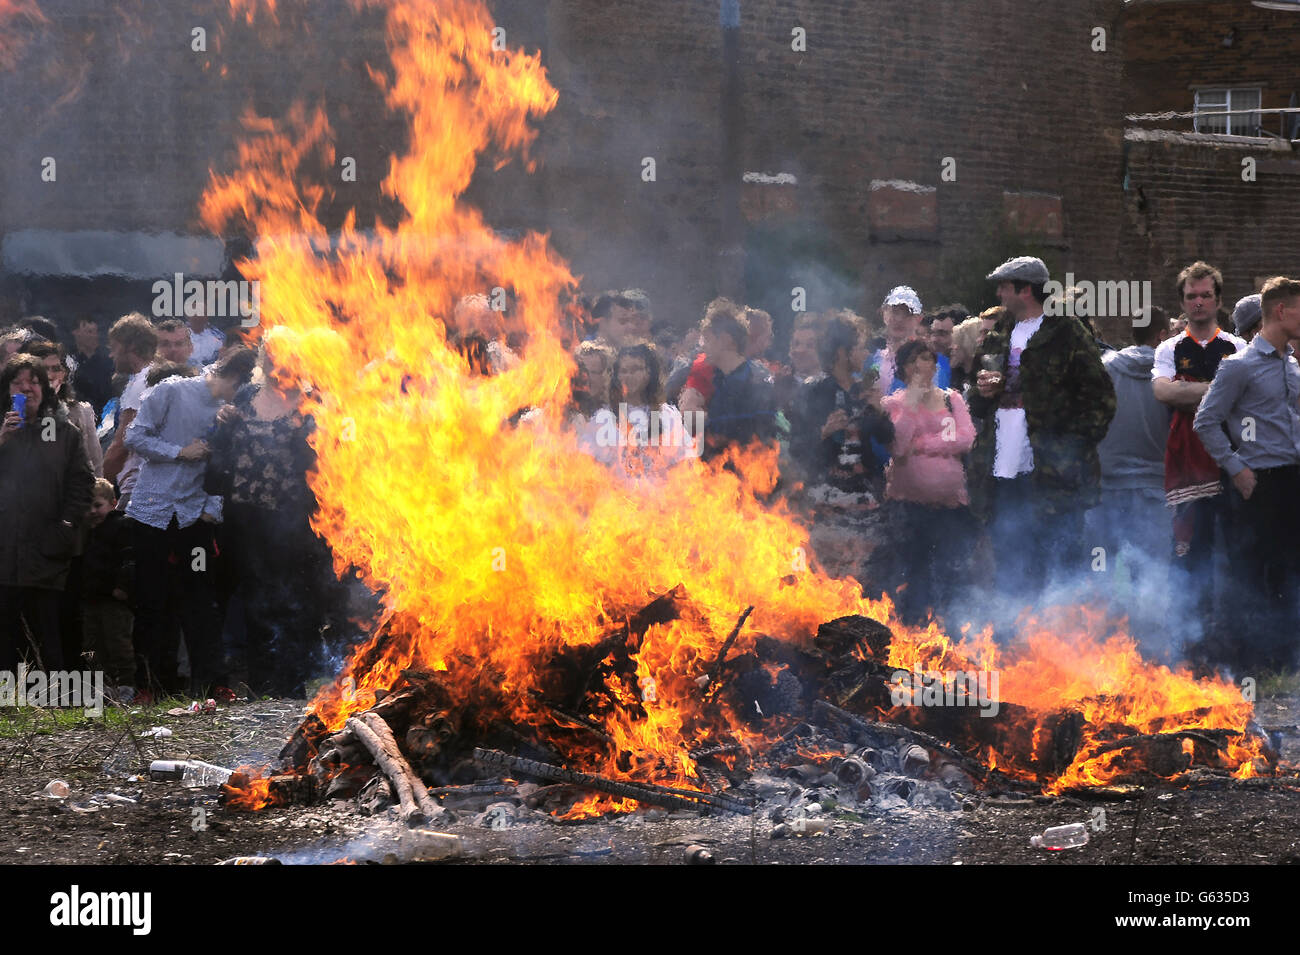 Los manifestantes incendiaron un ataúd que contenía una efigie de Margaret Thatcher después de una marcha de protesta el día de su funeral. Foto de stock